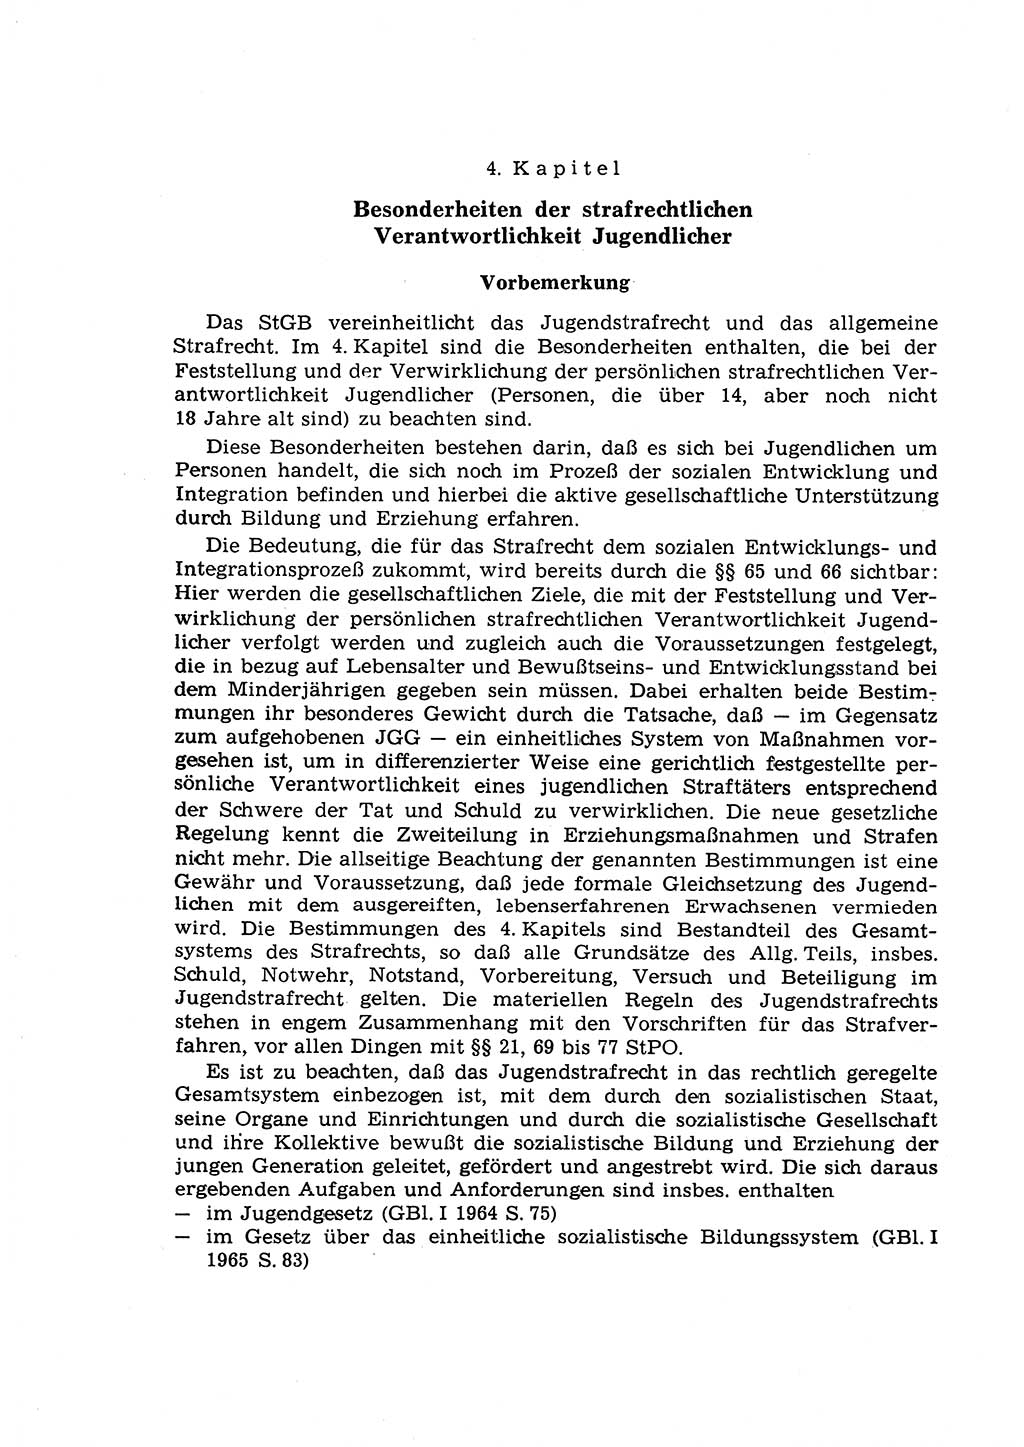 Strafrecht der Deutschen Demokratischen Republik (DDR), Lehrkommentar zum Strafgesetzbuch (StGB), Allgemeiner Teil 1970, Seite 246 (Strafr. DDR Lehrkomm. StGB AT 1970, S. 246)